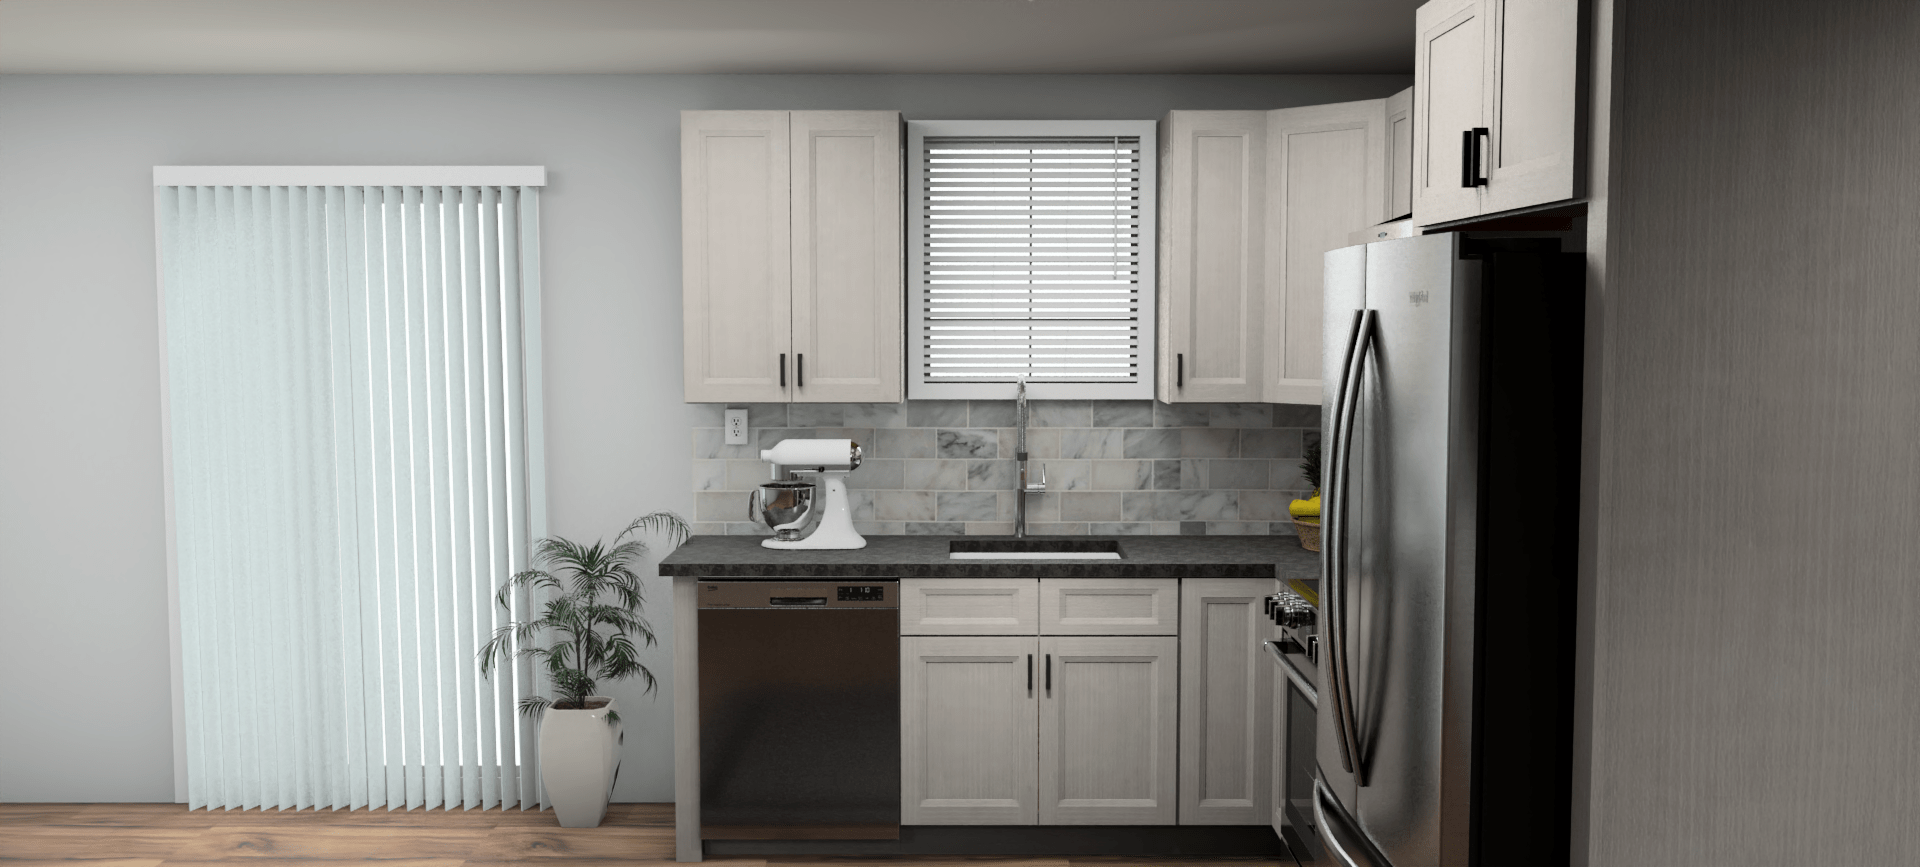 Fabuwood Allure Onyx Horizon 8 x 10 L Shaped Kitchen Side Layout Photo